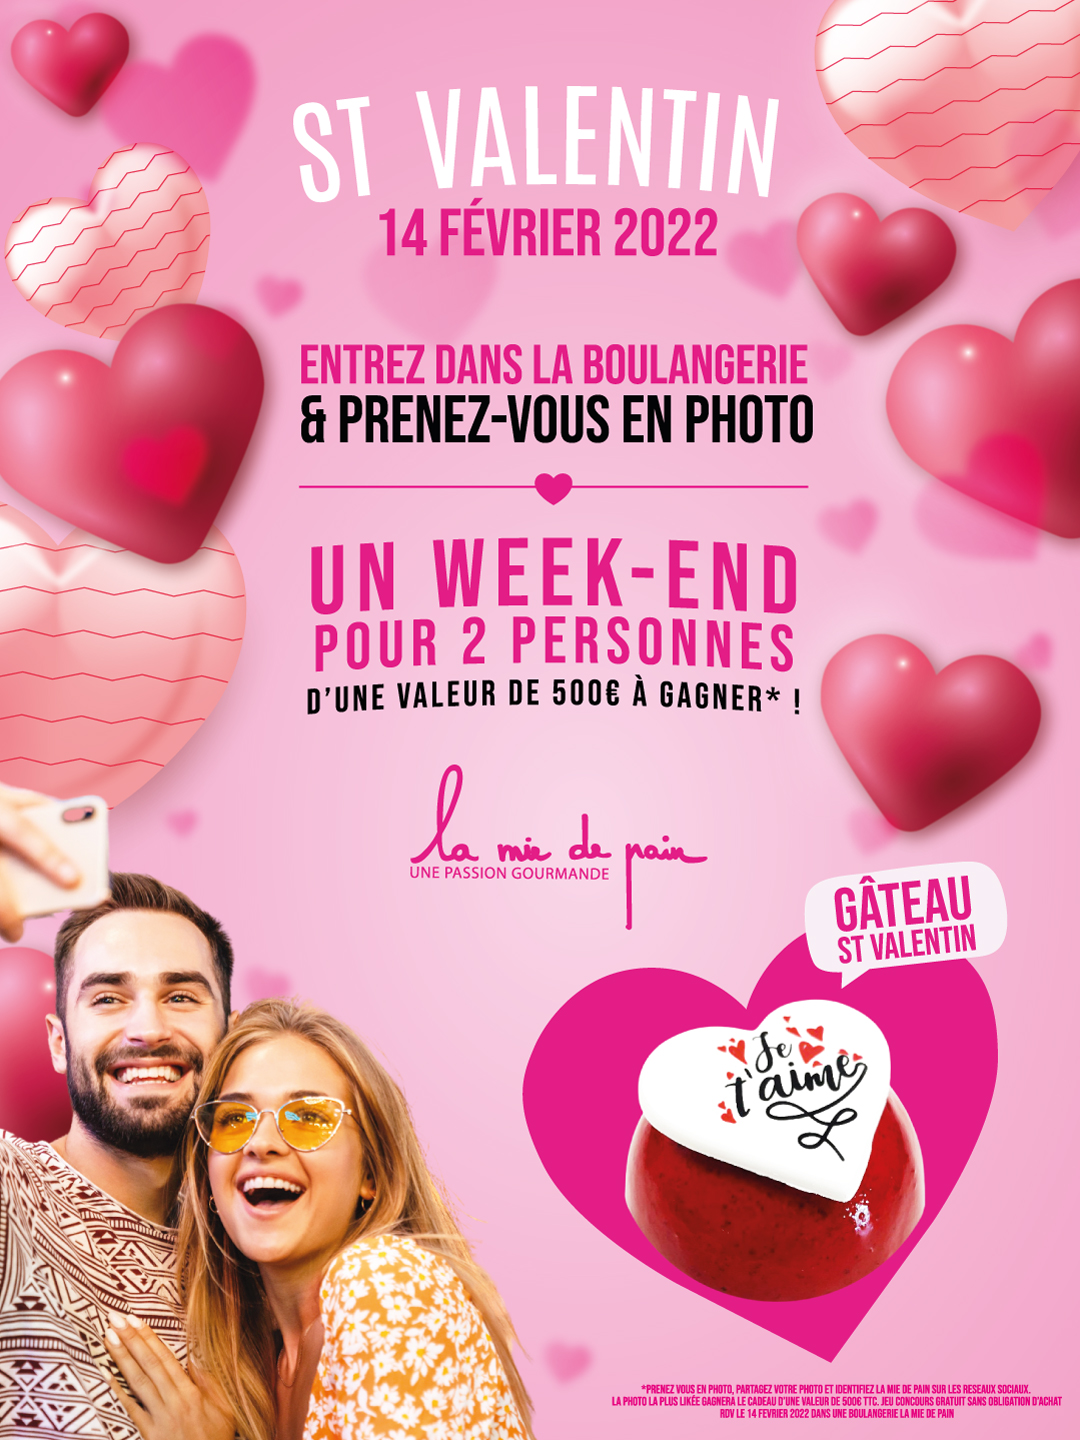 1080x1440px-A1-St-Valentin-2022-lamiedepain-photo-jeu-concours